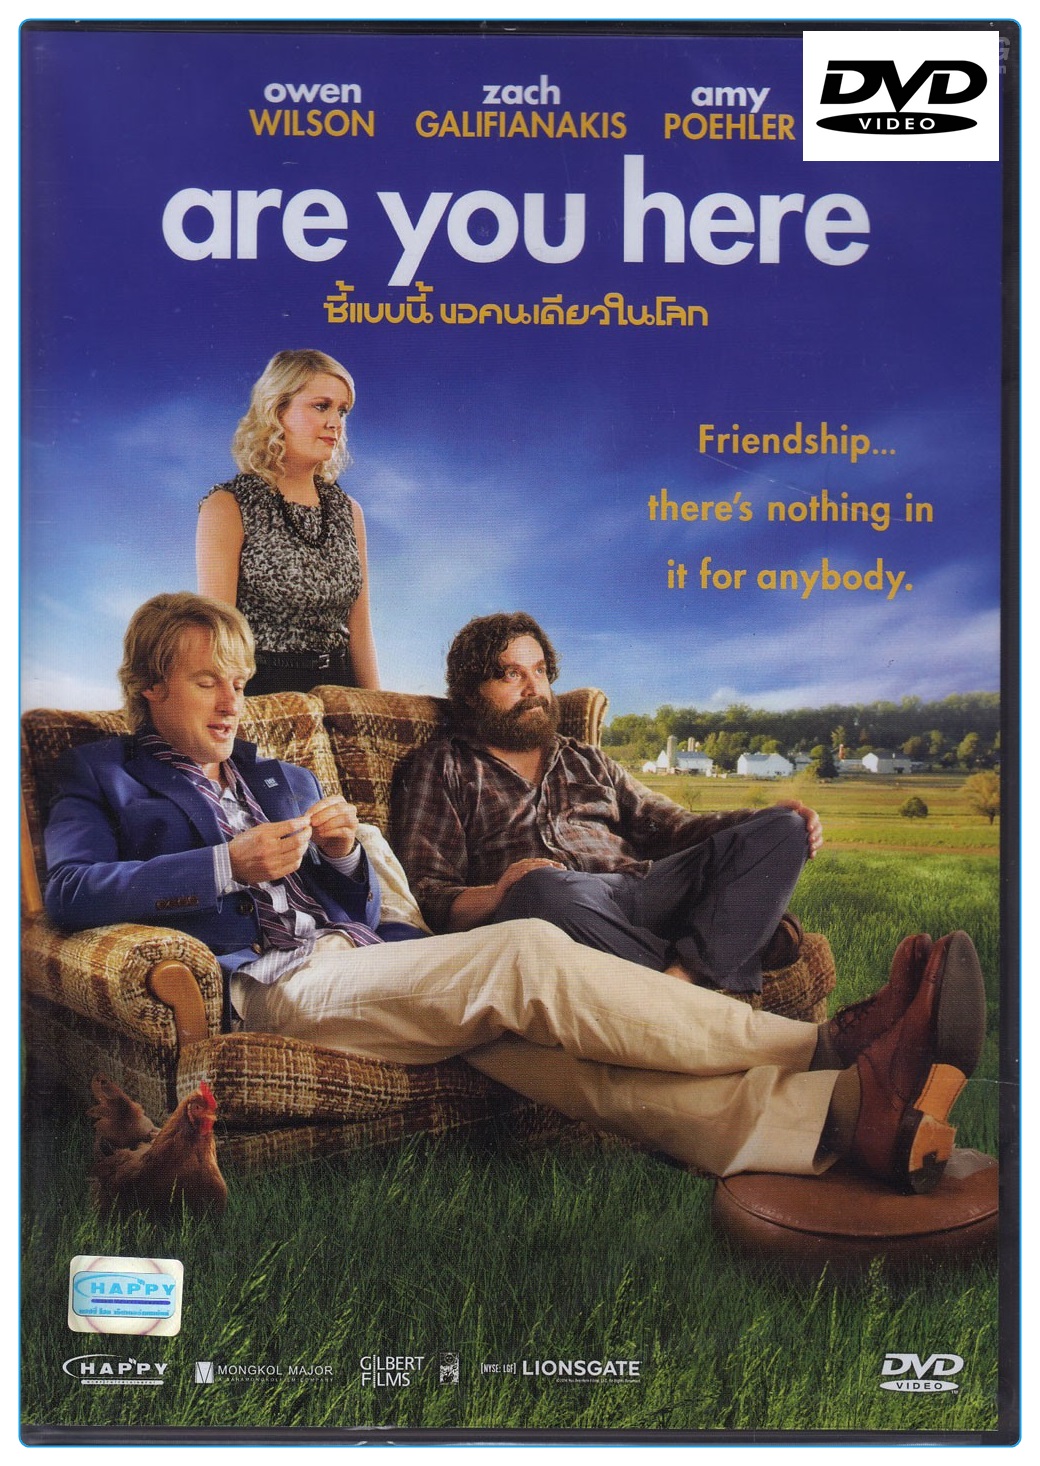 Are You Here  ซี้แบบนี้ ขอคนเดียวในโลก (DVD)